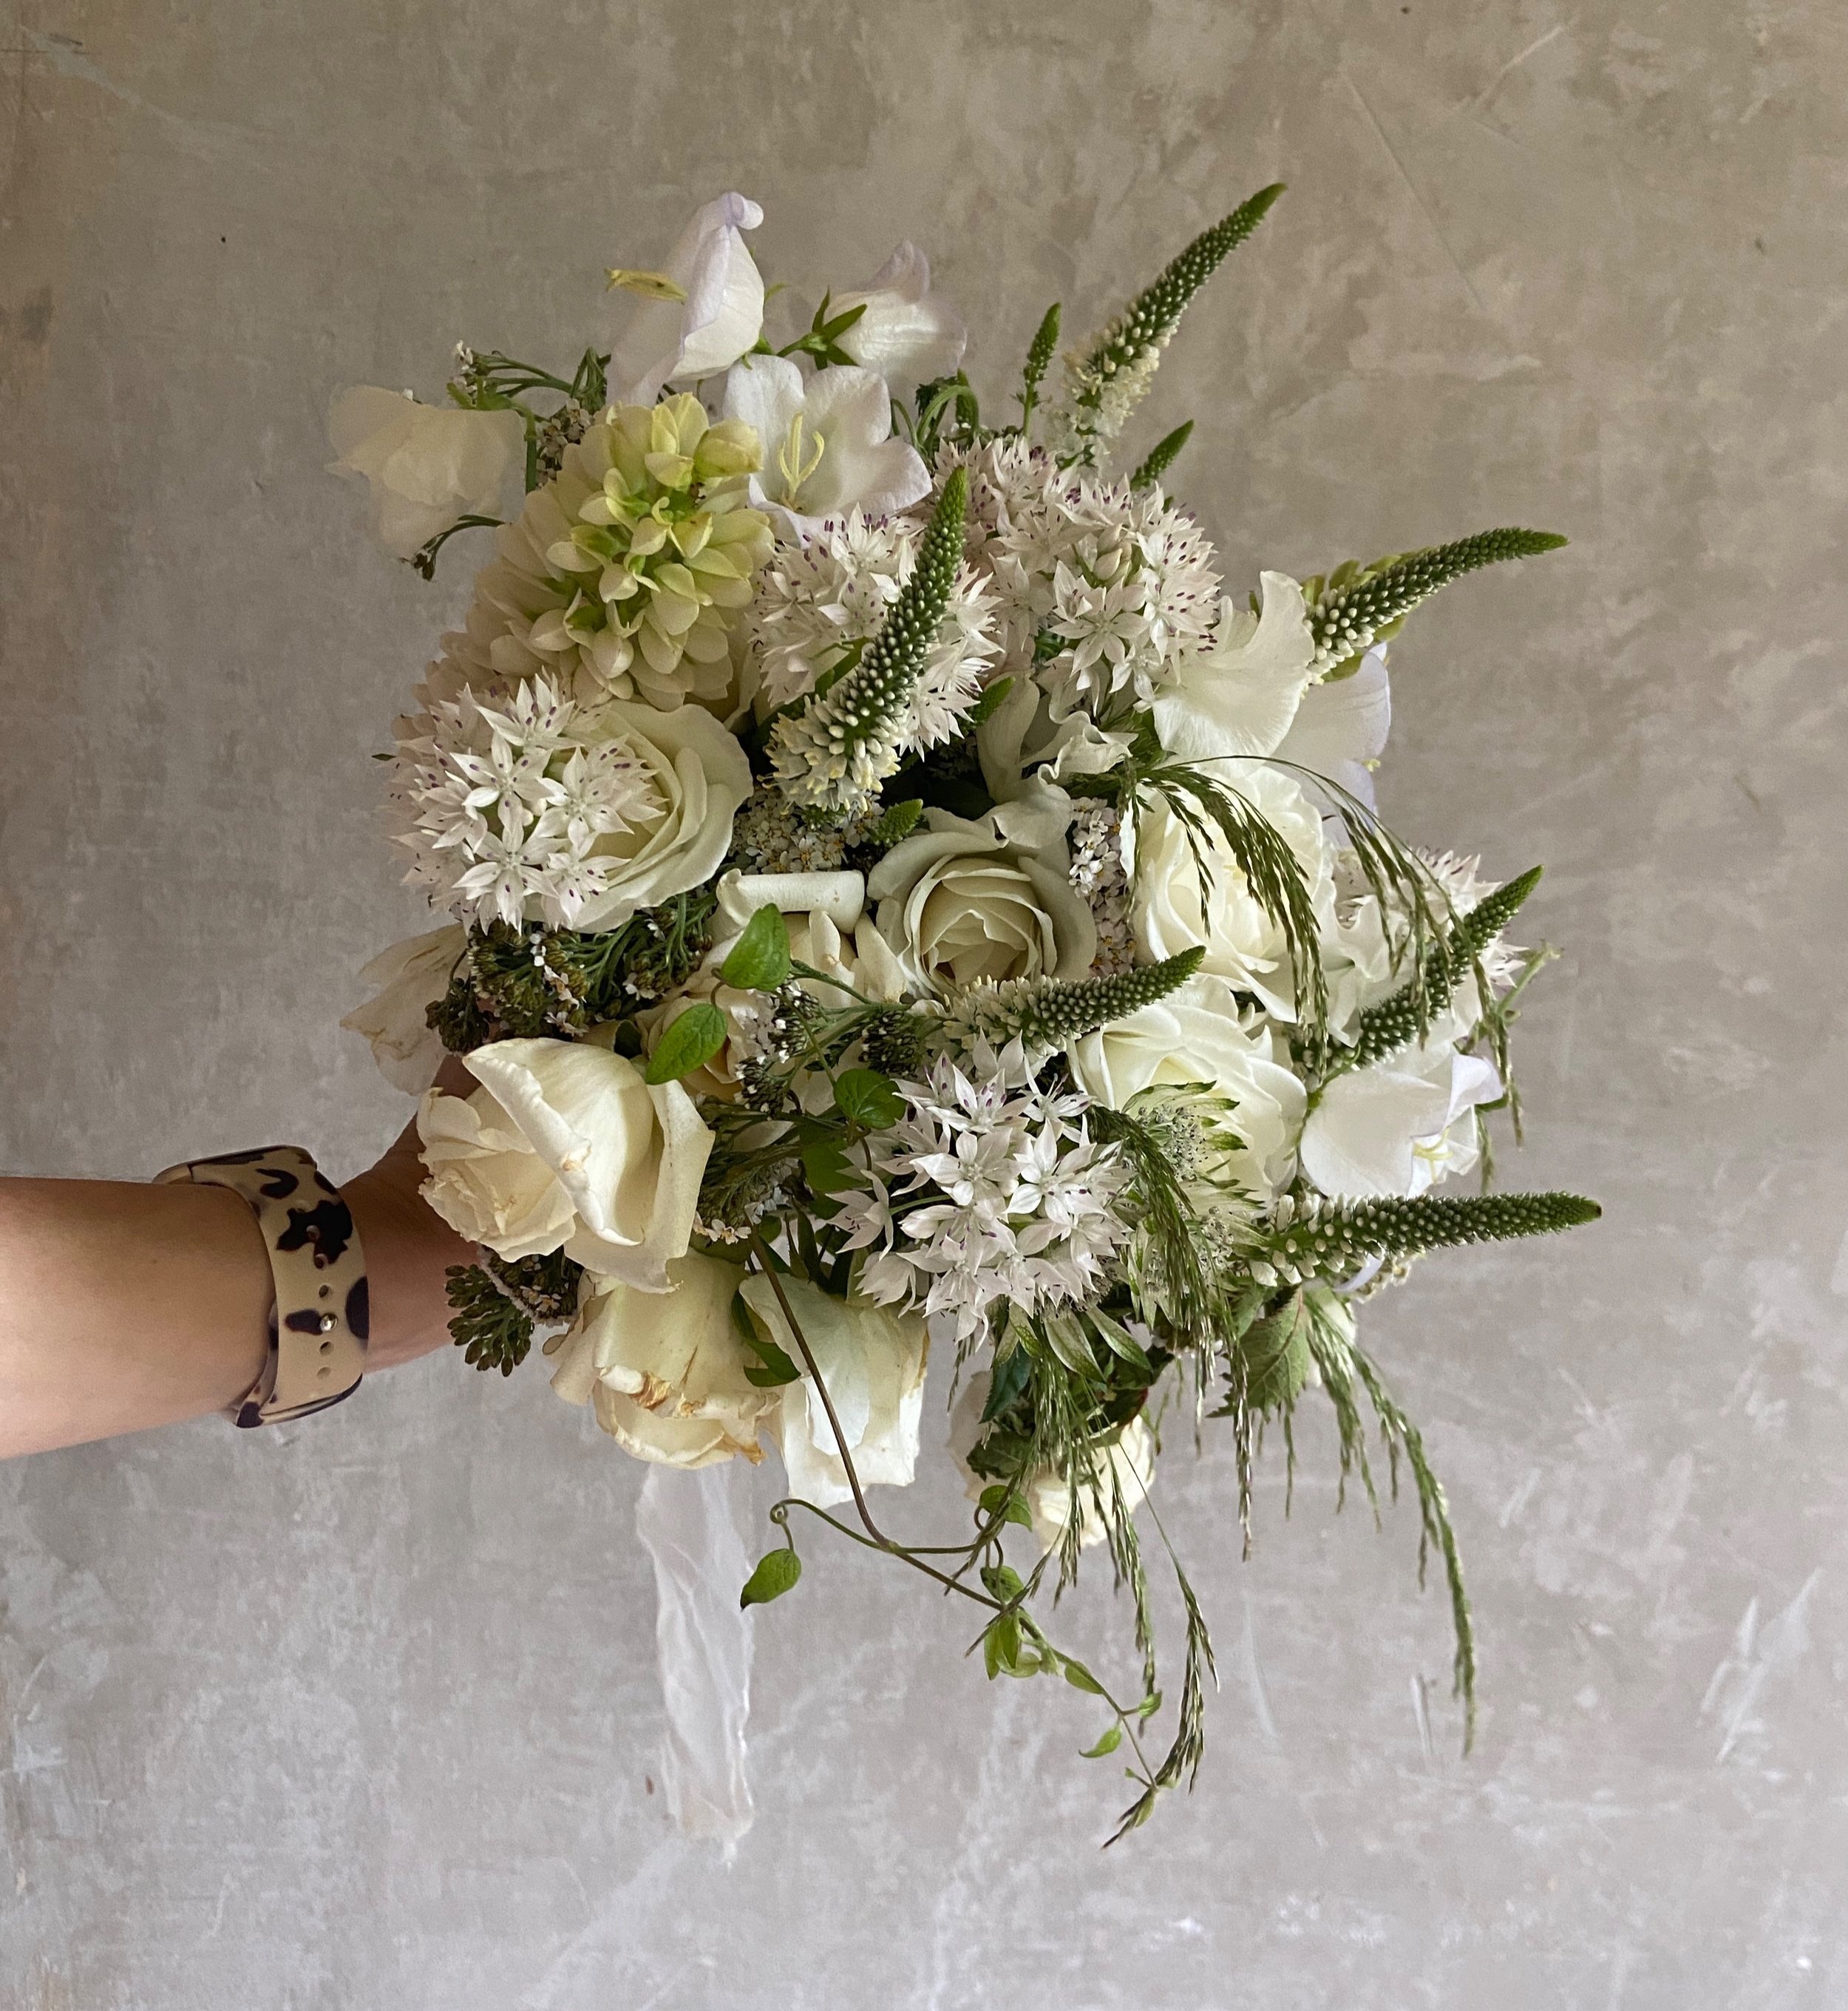 flower preservation kit Archives - Elegant Weddings Blog